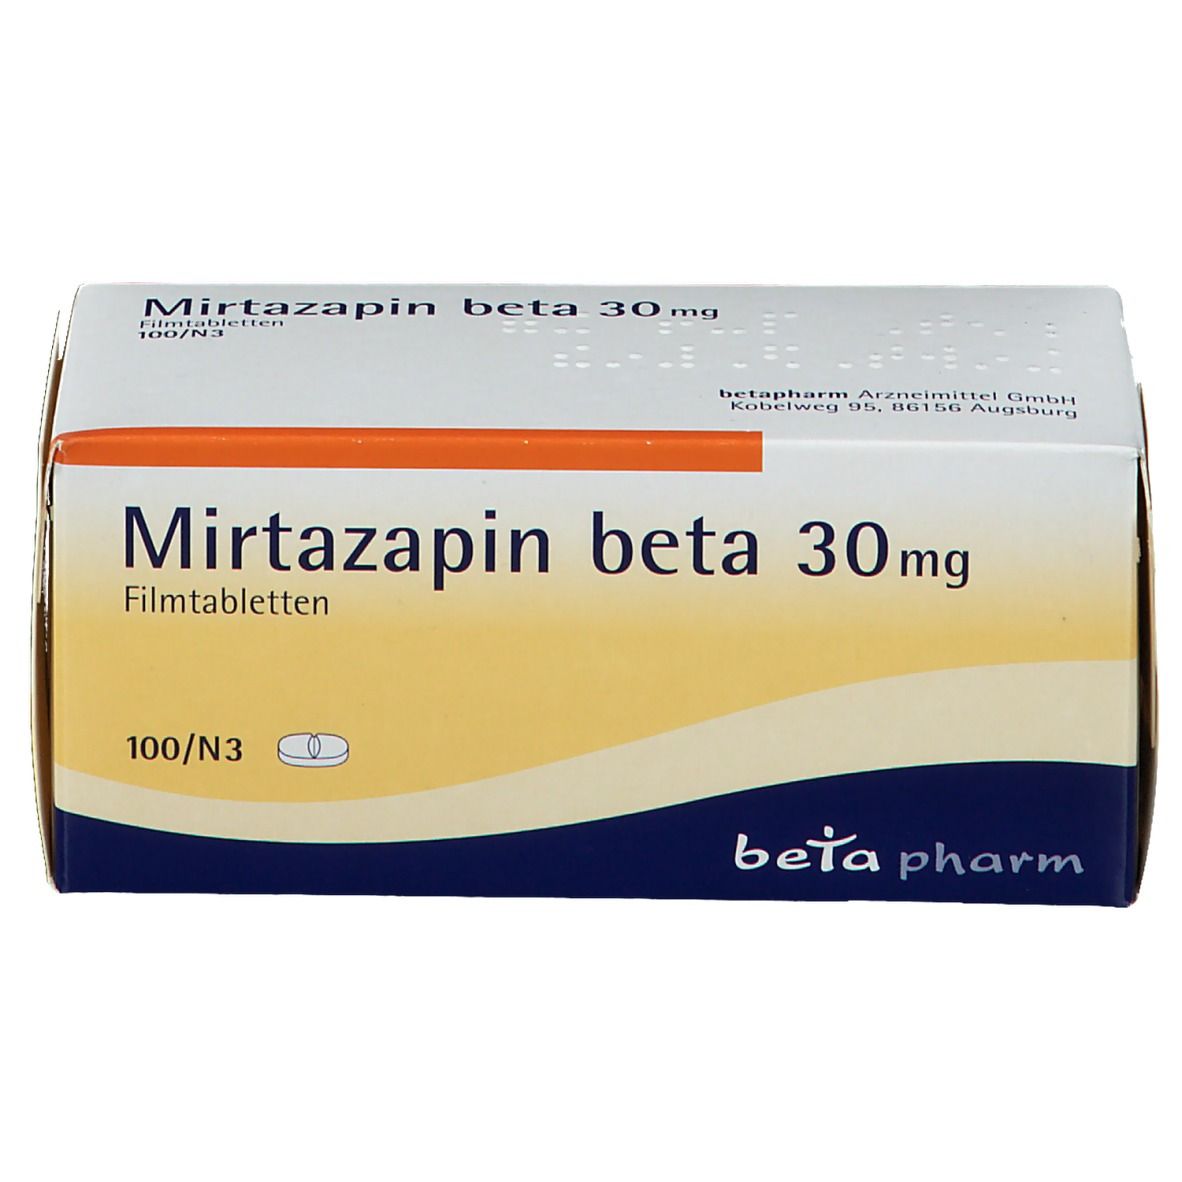 Mirtazapin beta 30 mg